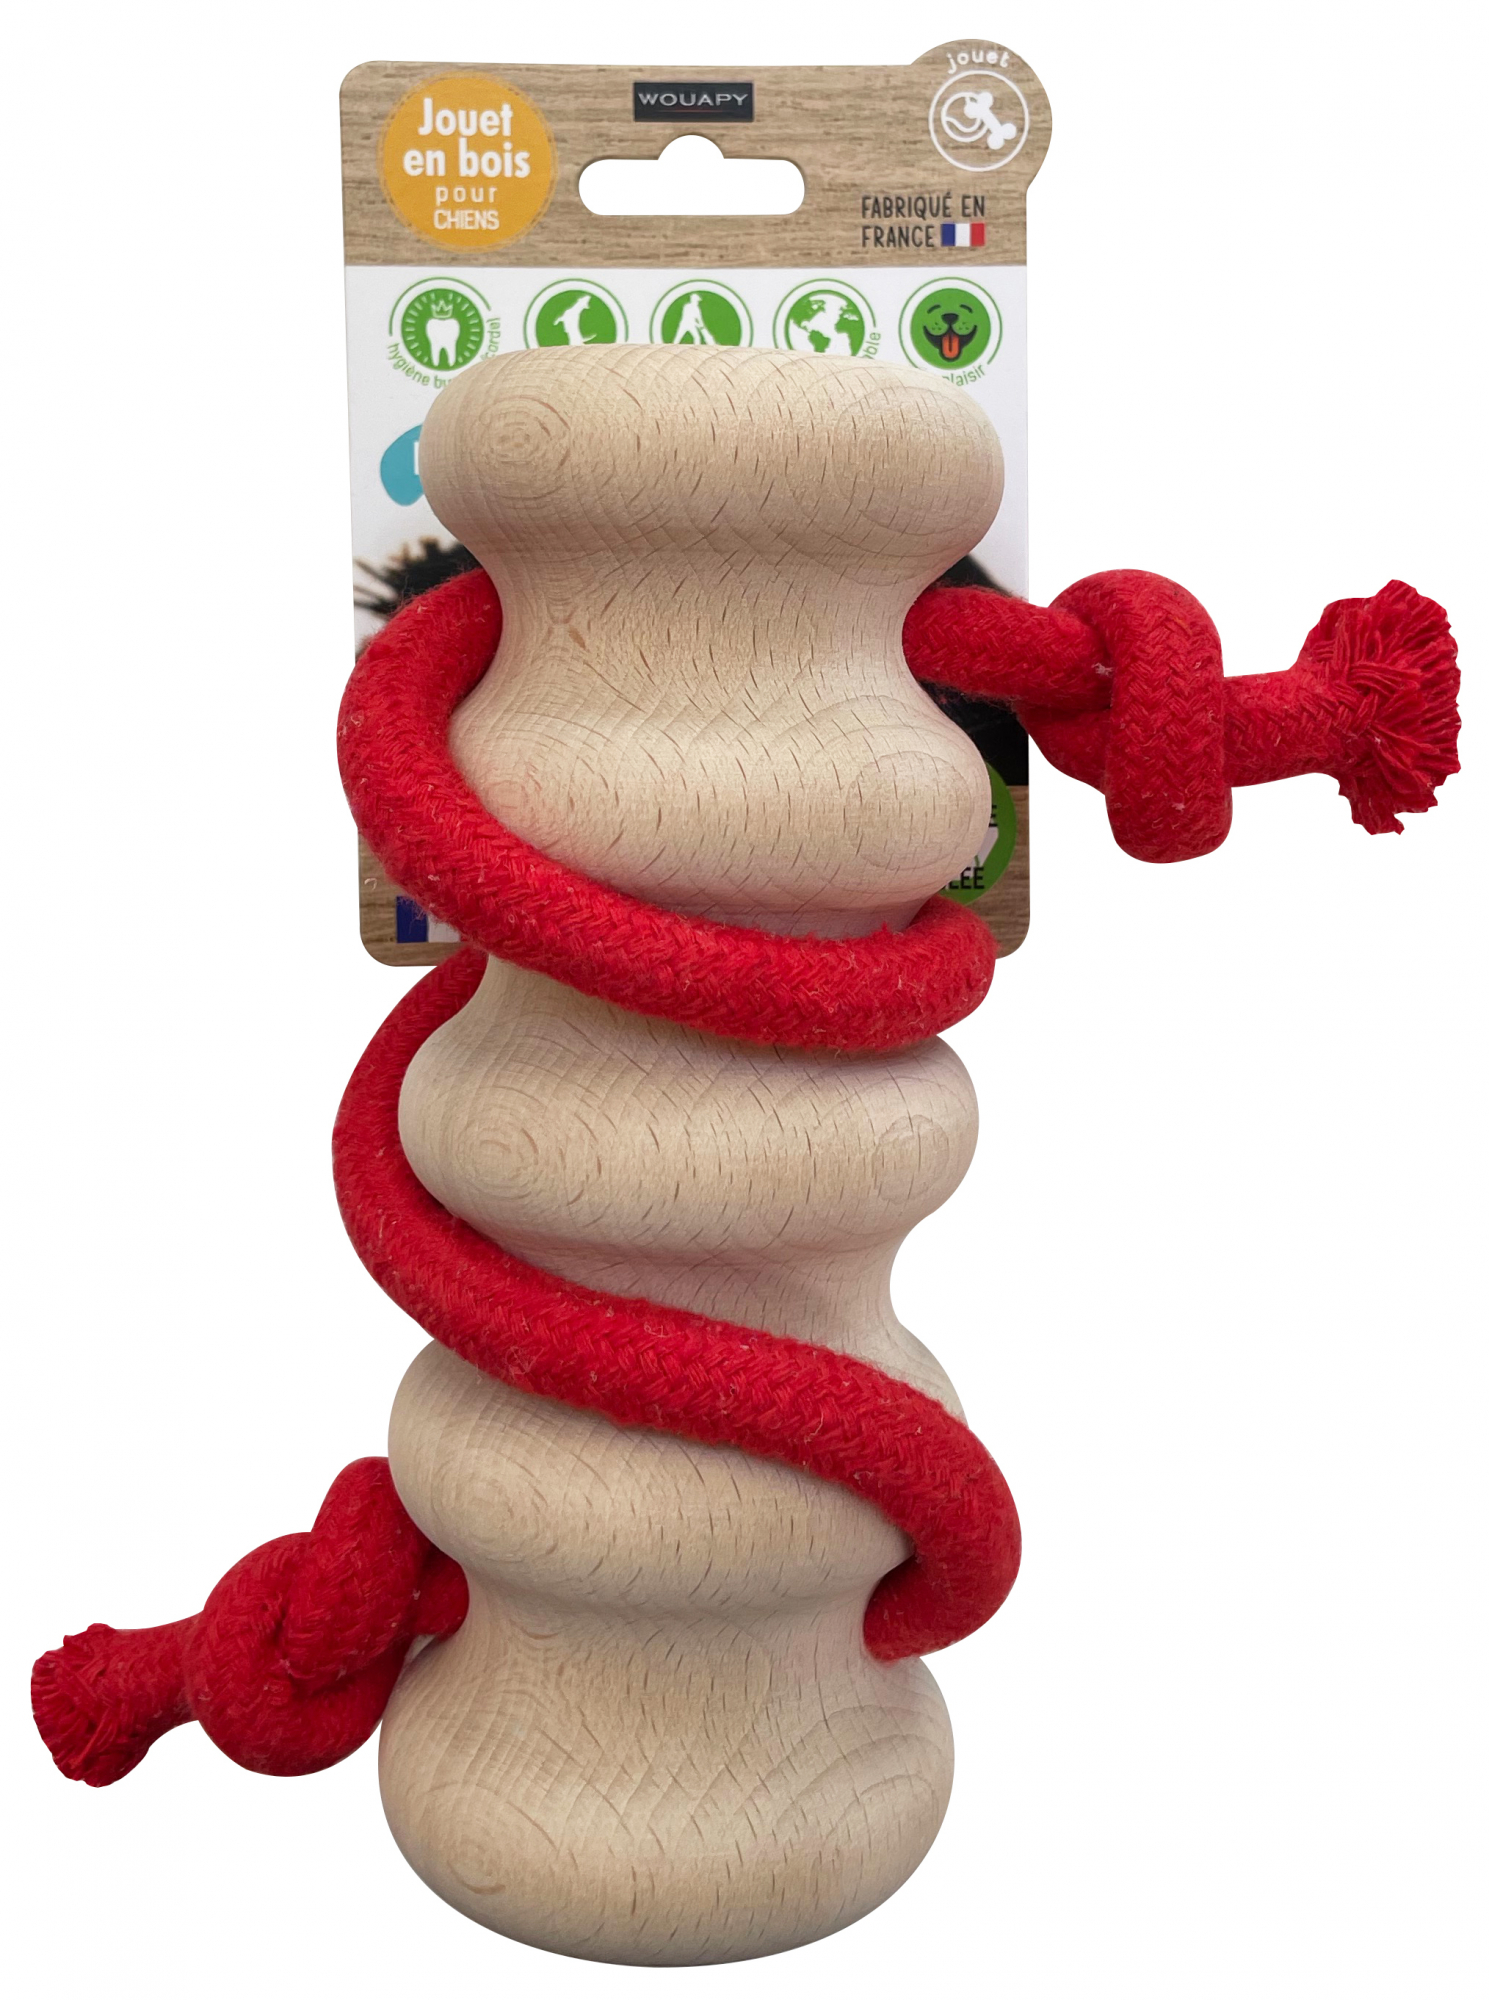 Houten speelgoed met touw Wave, 100% recyclebaar